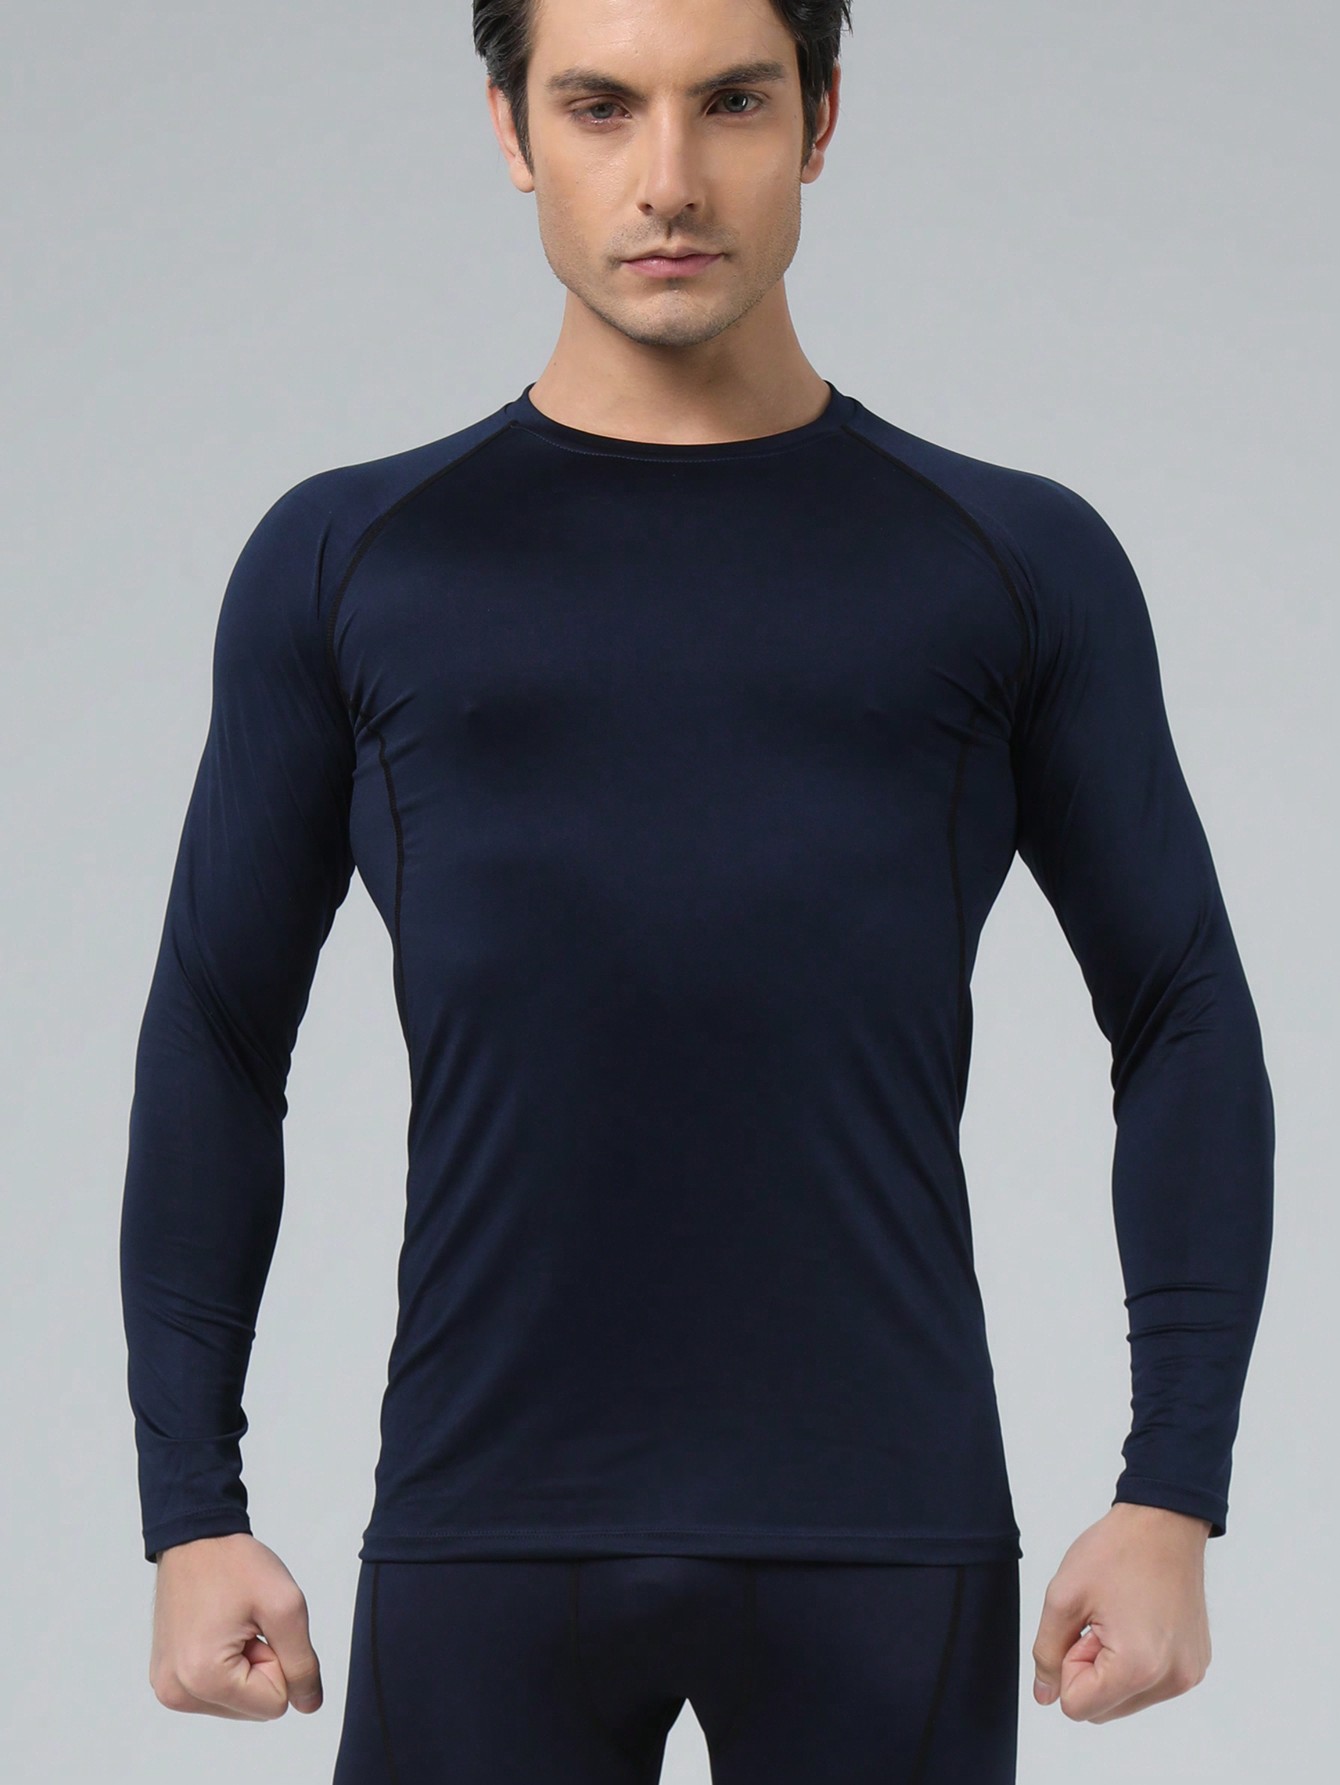 Мужская эластичная компрессионная рубашка для фитнеса с длинными рукавами, темно-синий женский топ для йоги эластичный свободный с длинными рукавами спортивный топ женская дышащая футболка для фитнеса бега фитнеса йоги